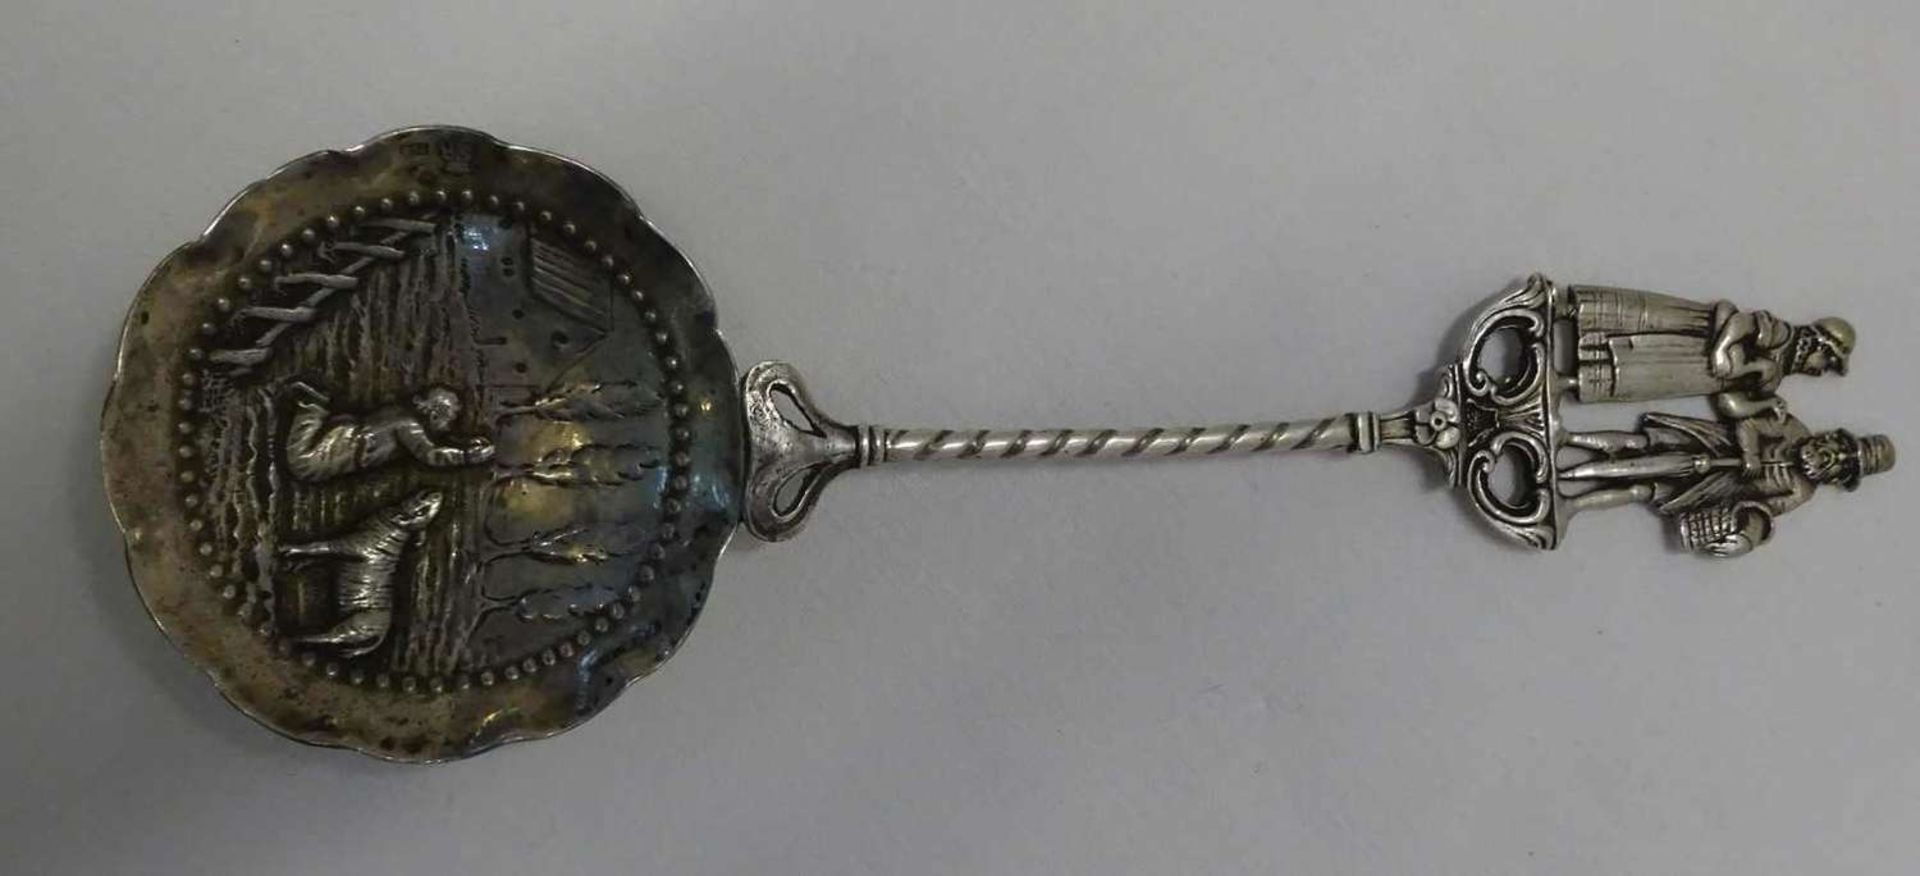 Hochzeitslöffel Silber, 19. Jhrdt., Punze SR 800 für Simon Rosenau 1861-, Juwelier einer jüdisch